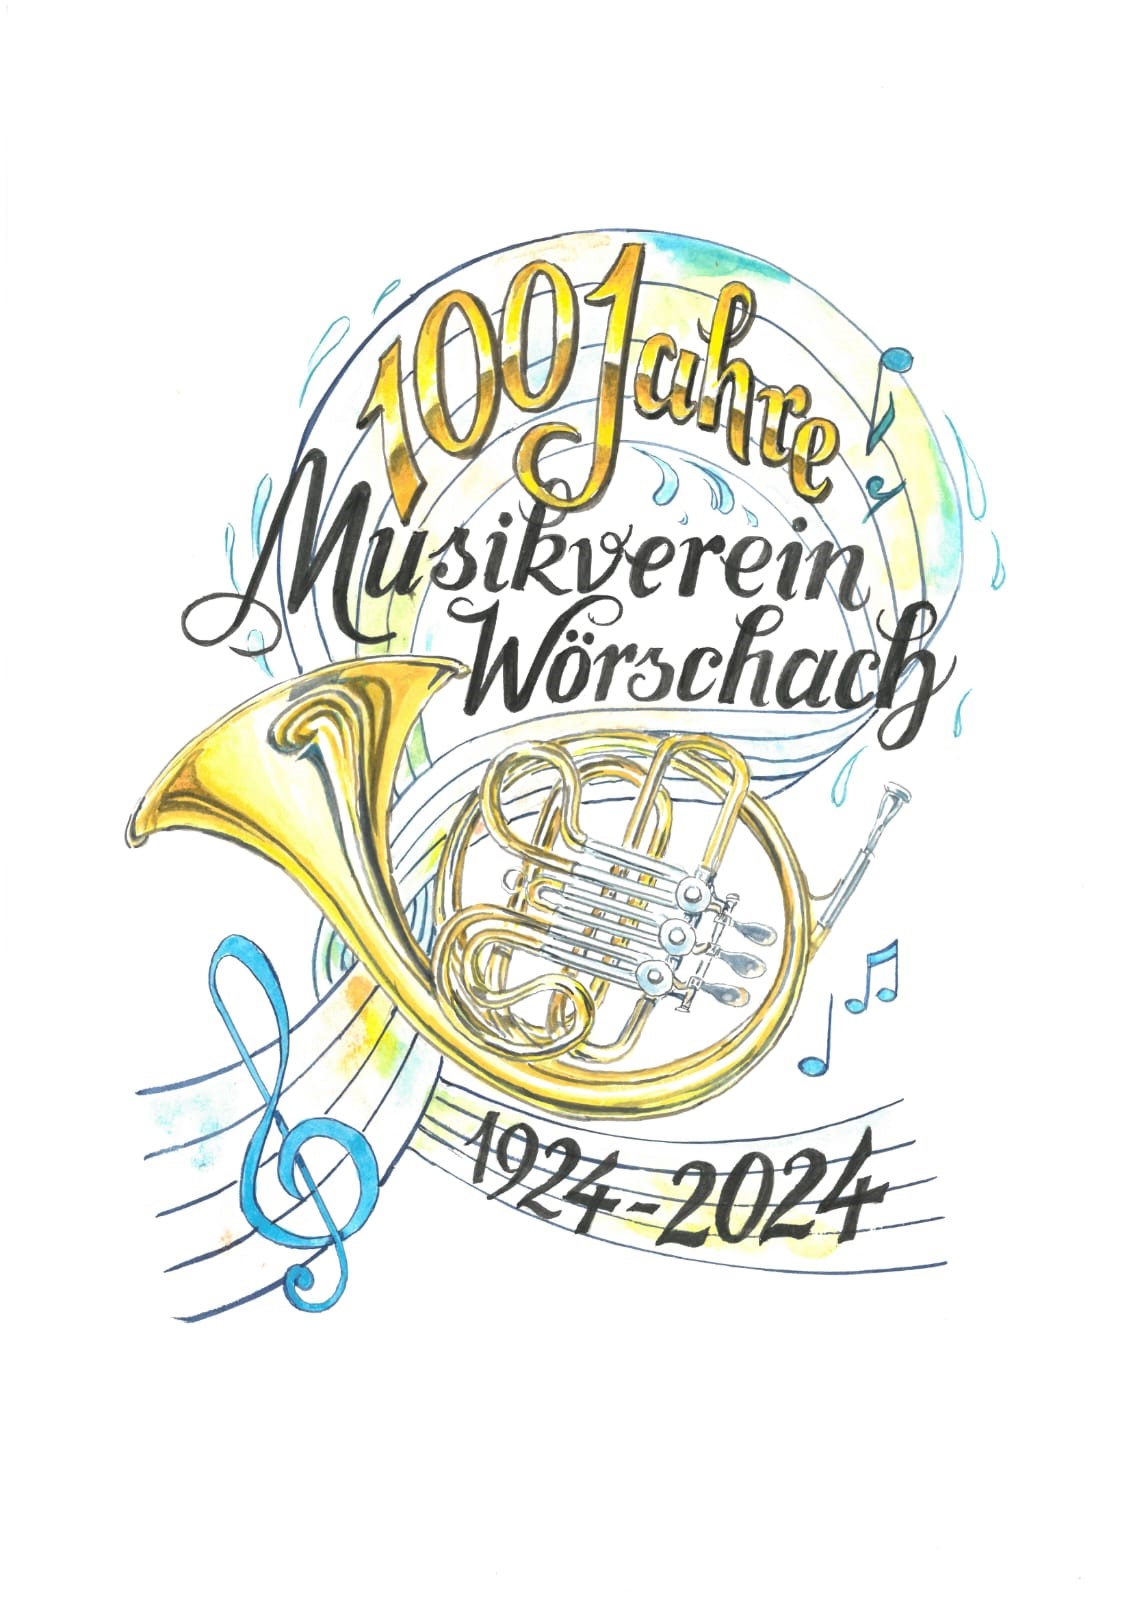 100 Jahre Musikverein Wörschach